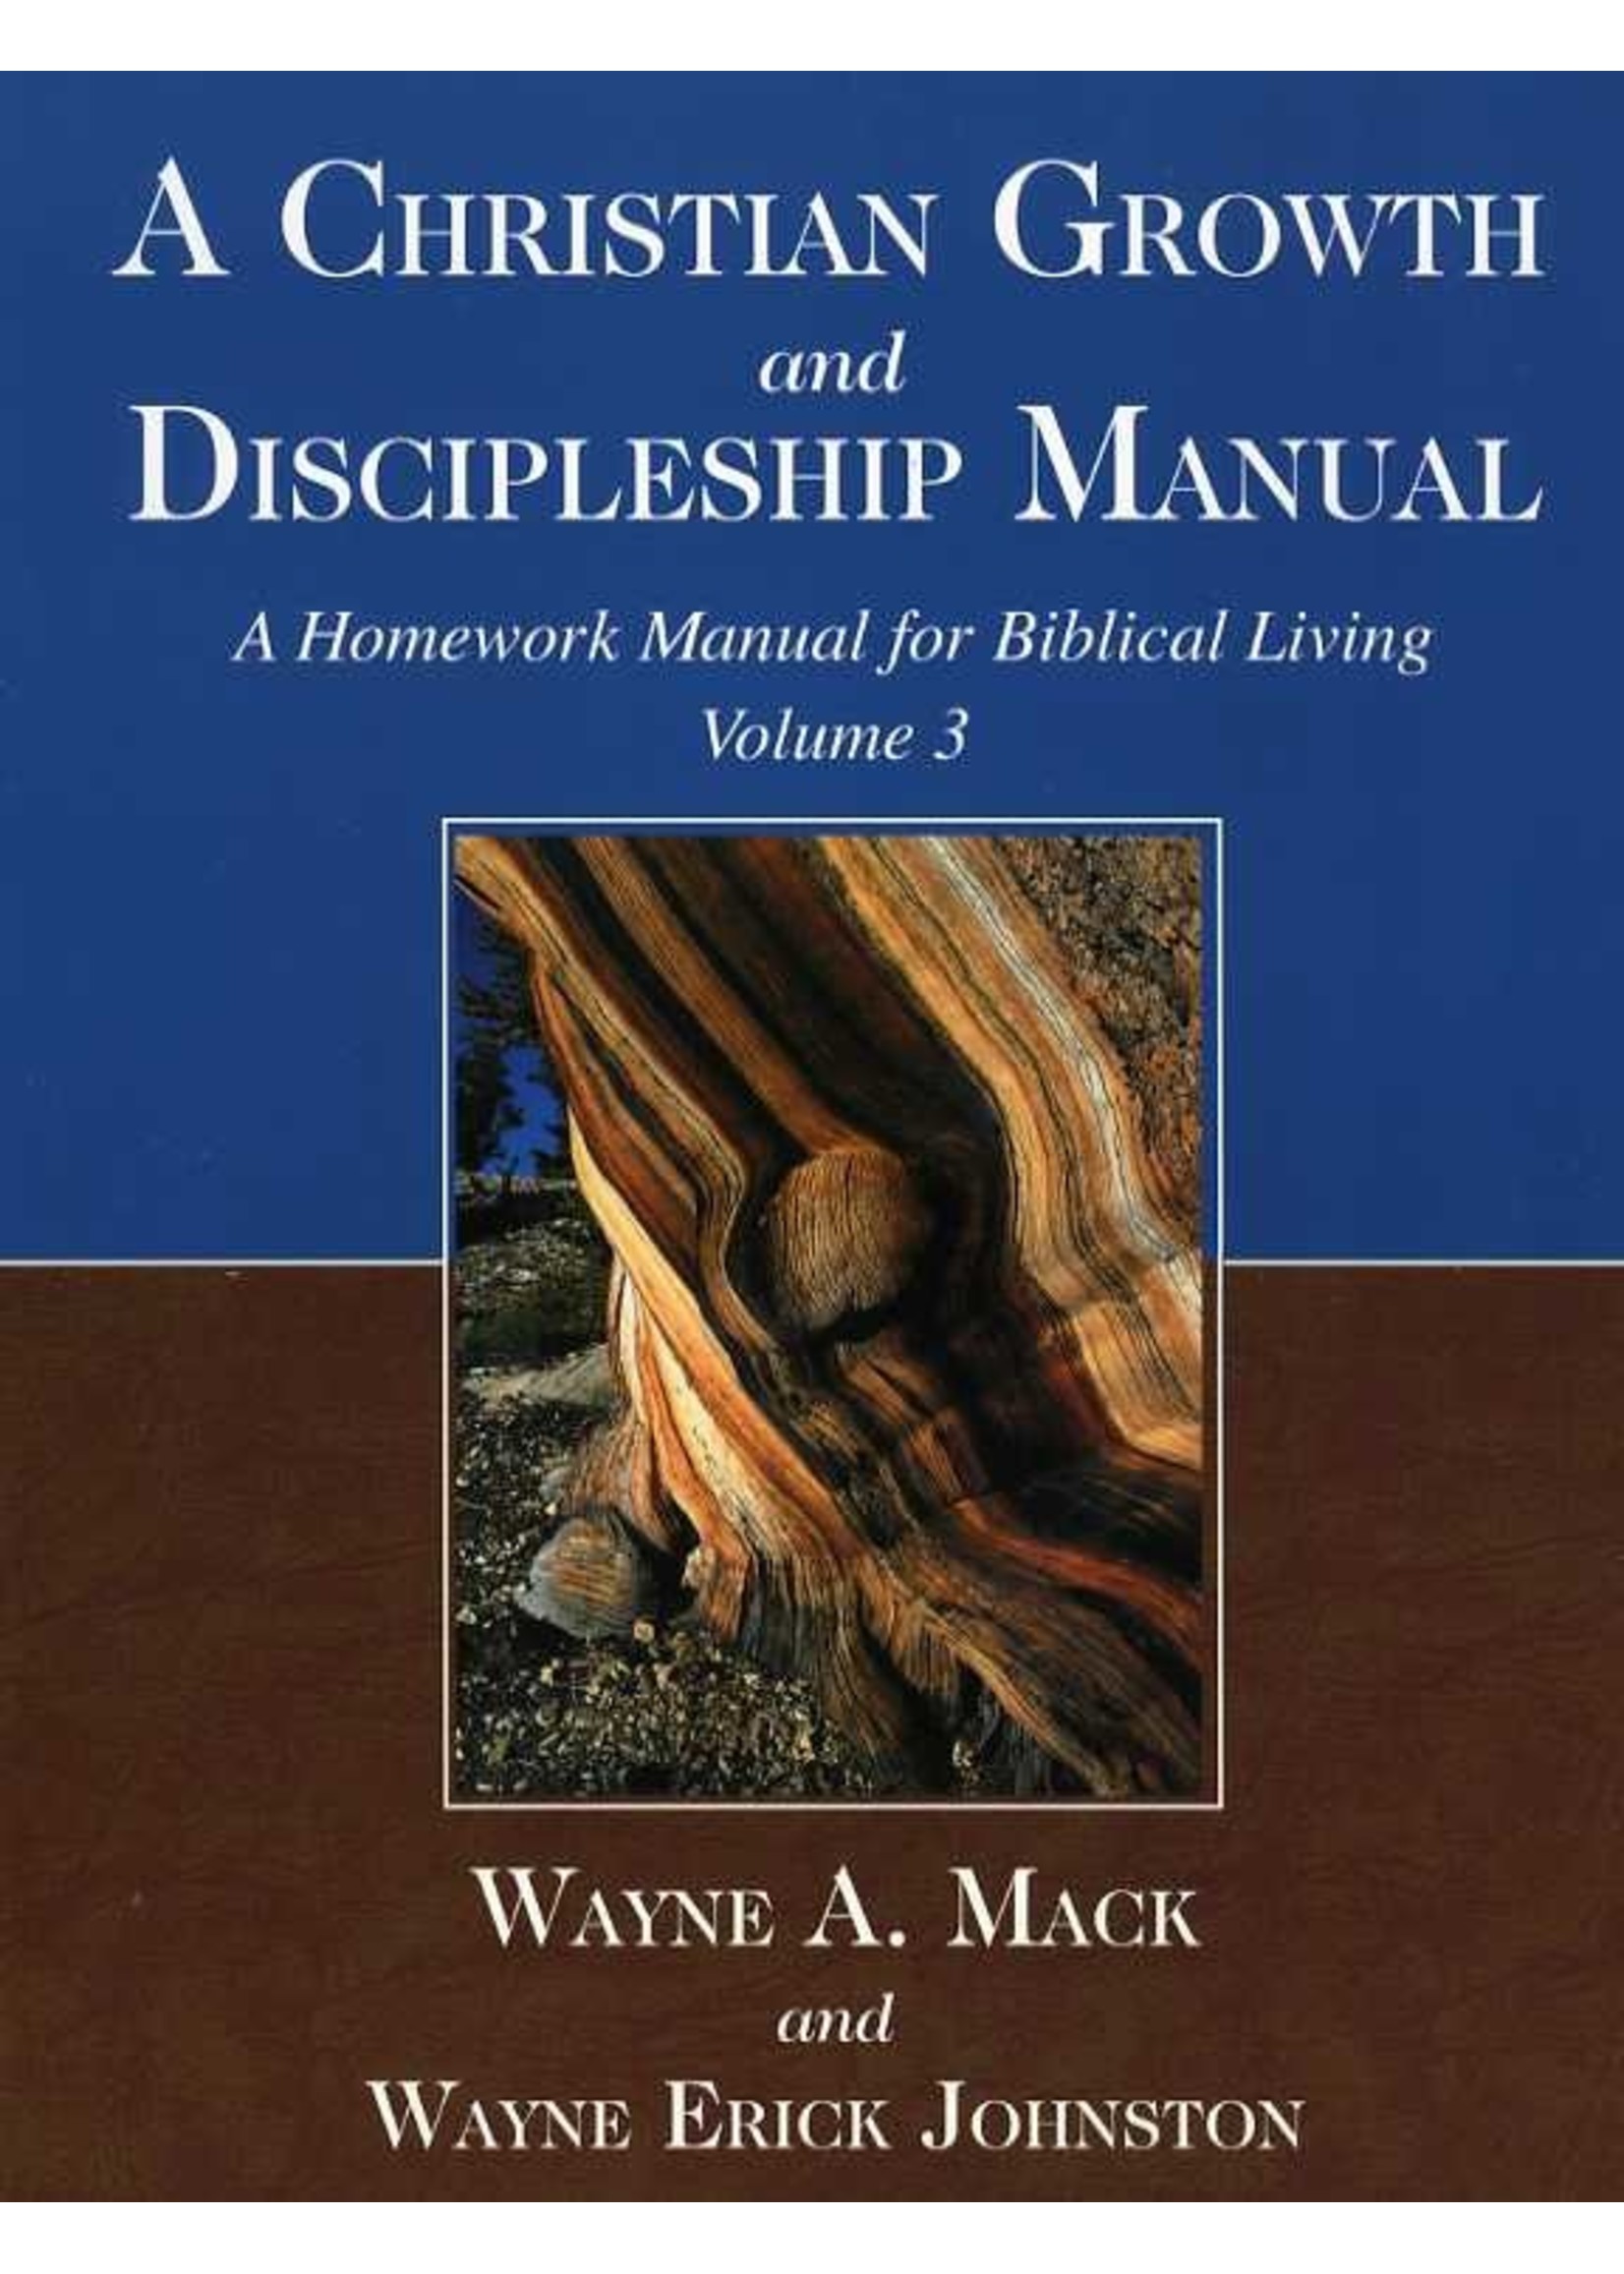 A Christian Growth and Discipleship Manual - Wayne Mack